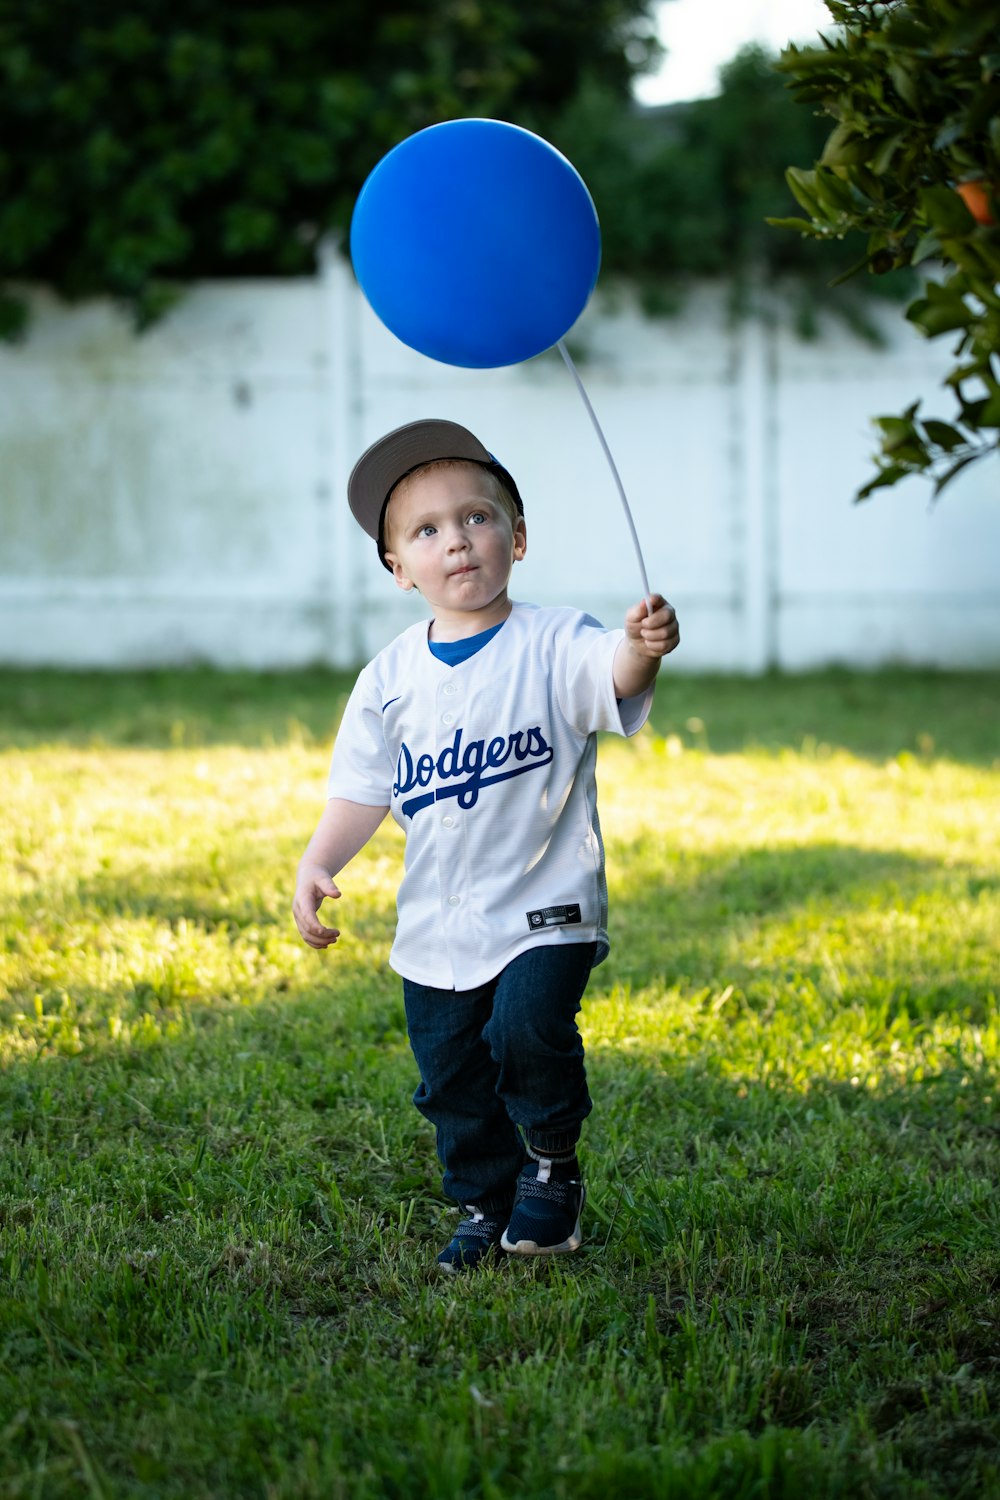 a young boy holding onto a blue balloon